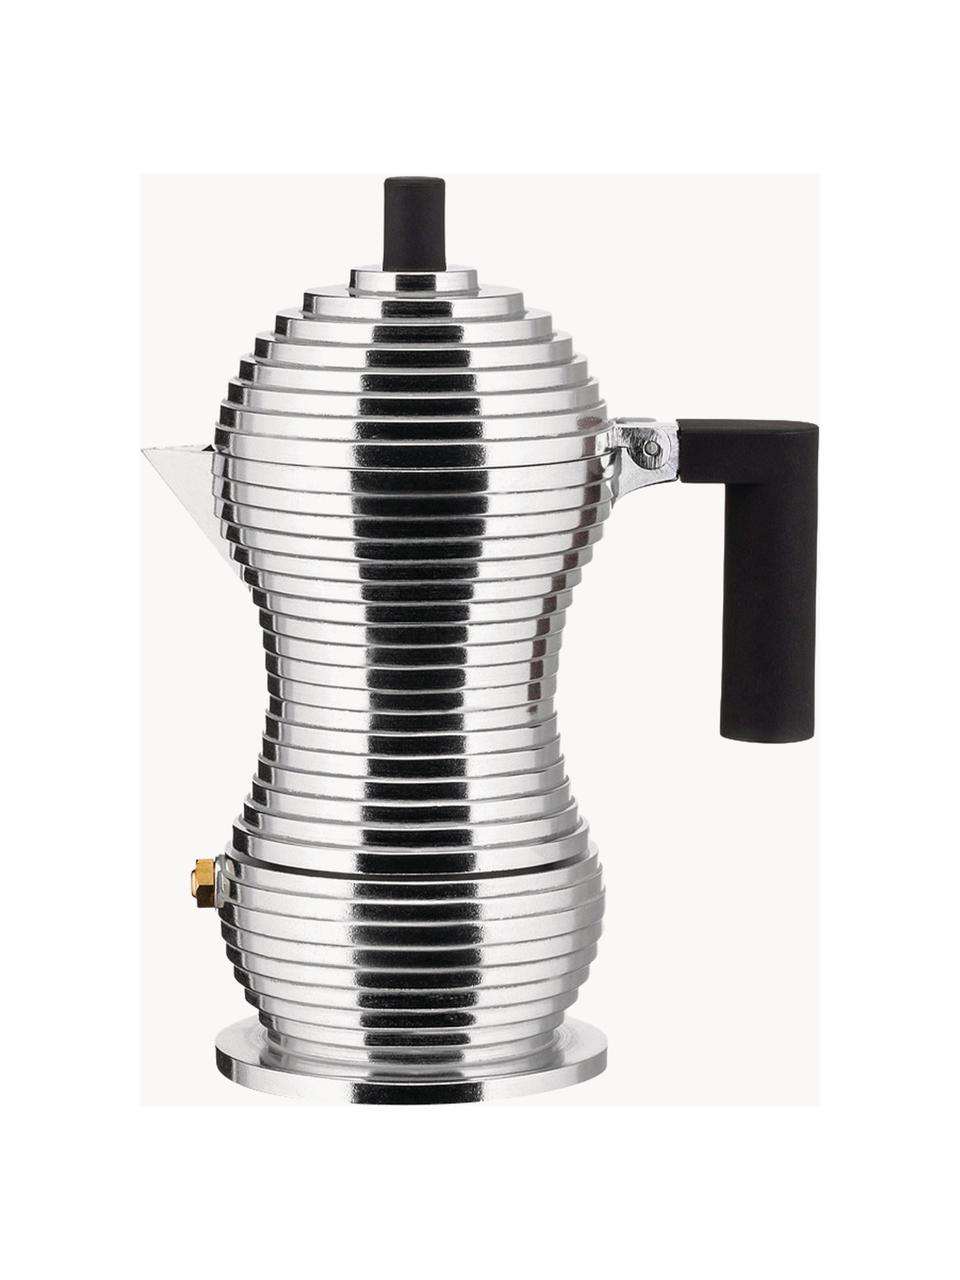 Cafetera espresso Pulcina, Recipiente: fundición de aluminio, Asa: poliamida, Plateado brillante, Ancho 13 x Alto 17 cm, para una taza